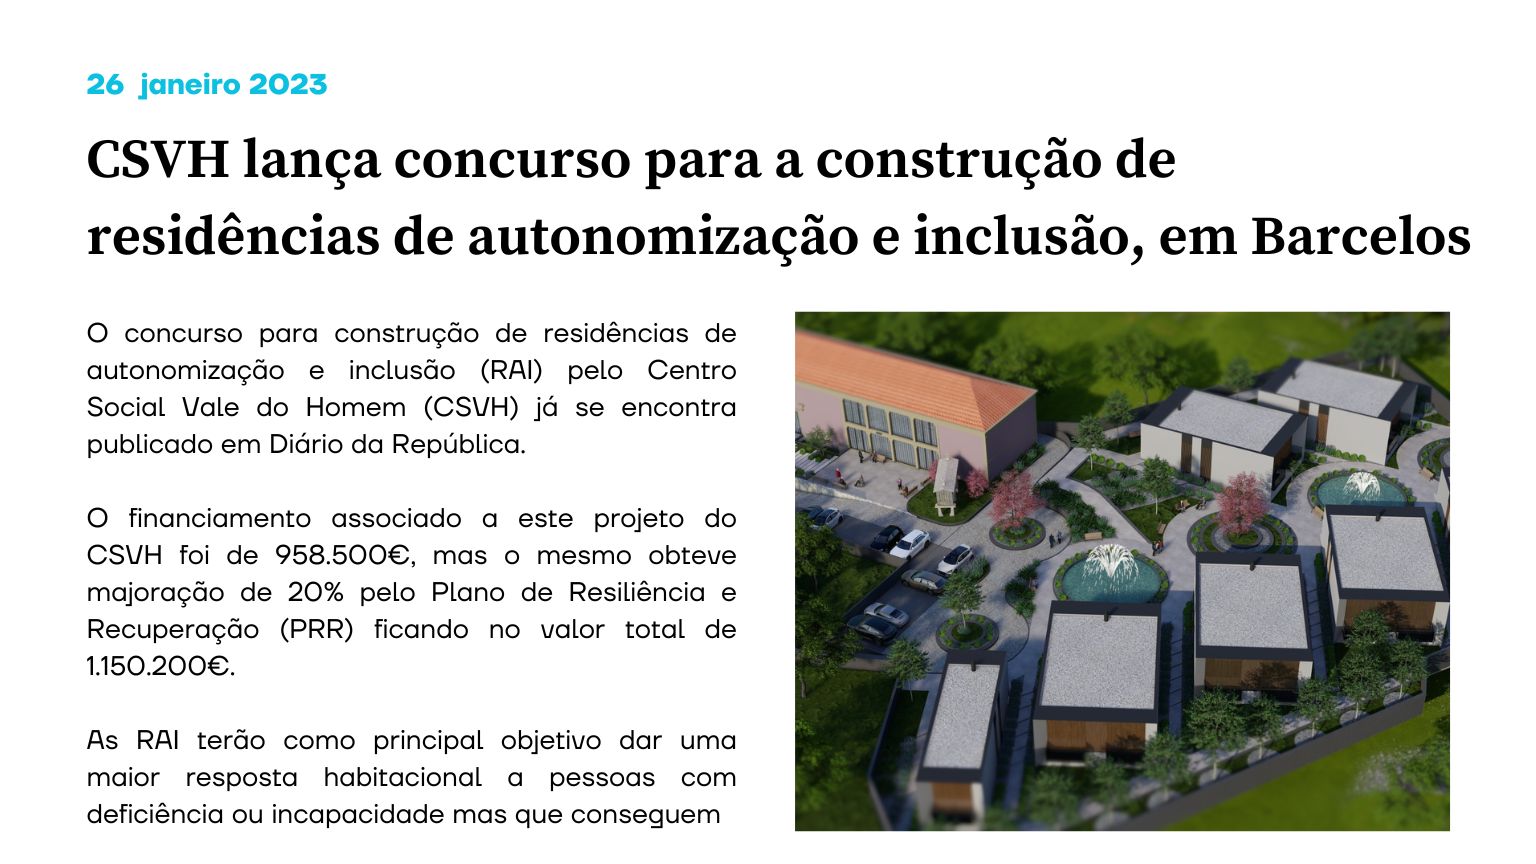 CSVH lança concurso para a construção de residências de autonomização e inclusão, em Barcelos